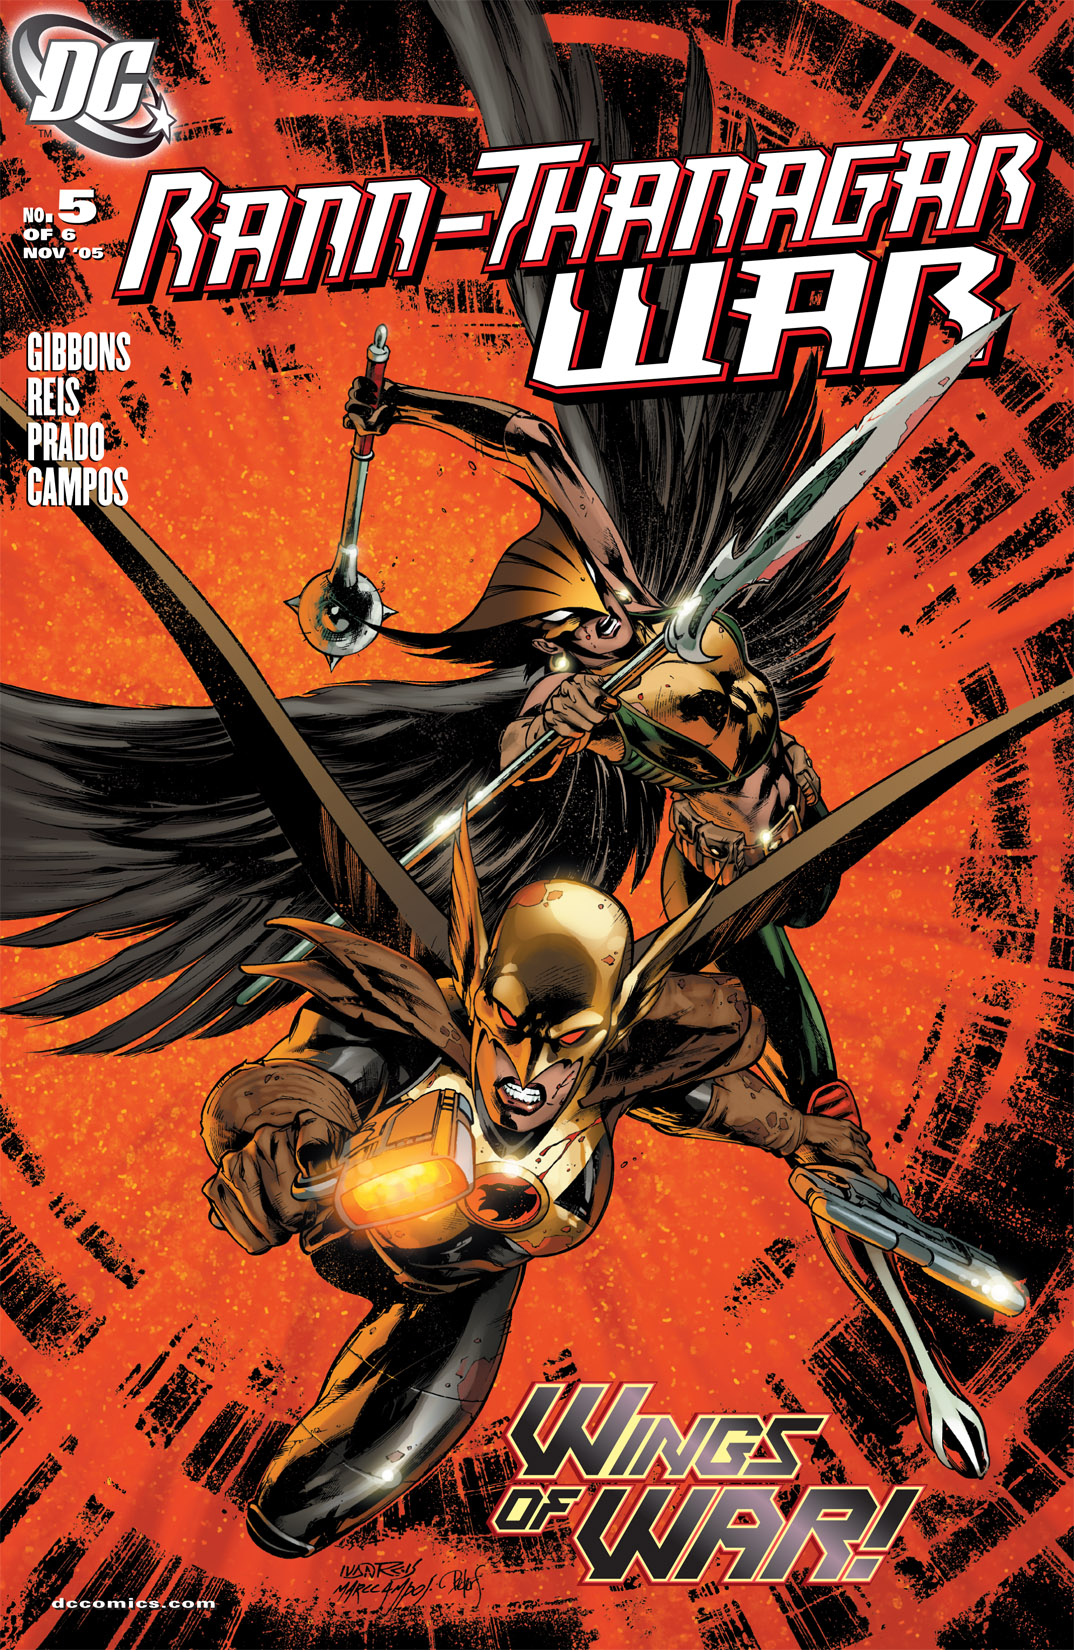 Read online Rann/Thanagar War comic -  Issue #5 - 1